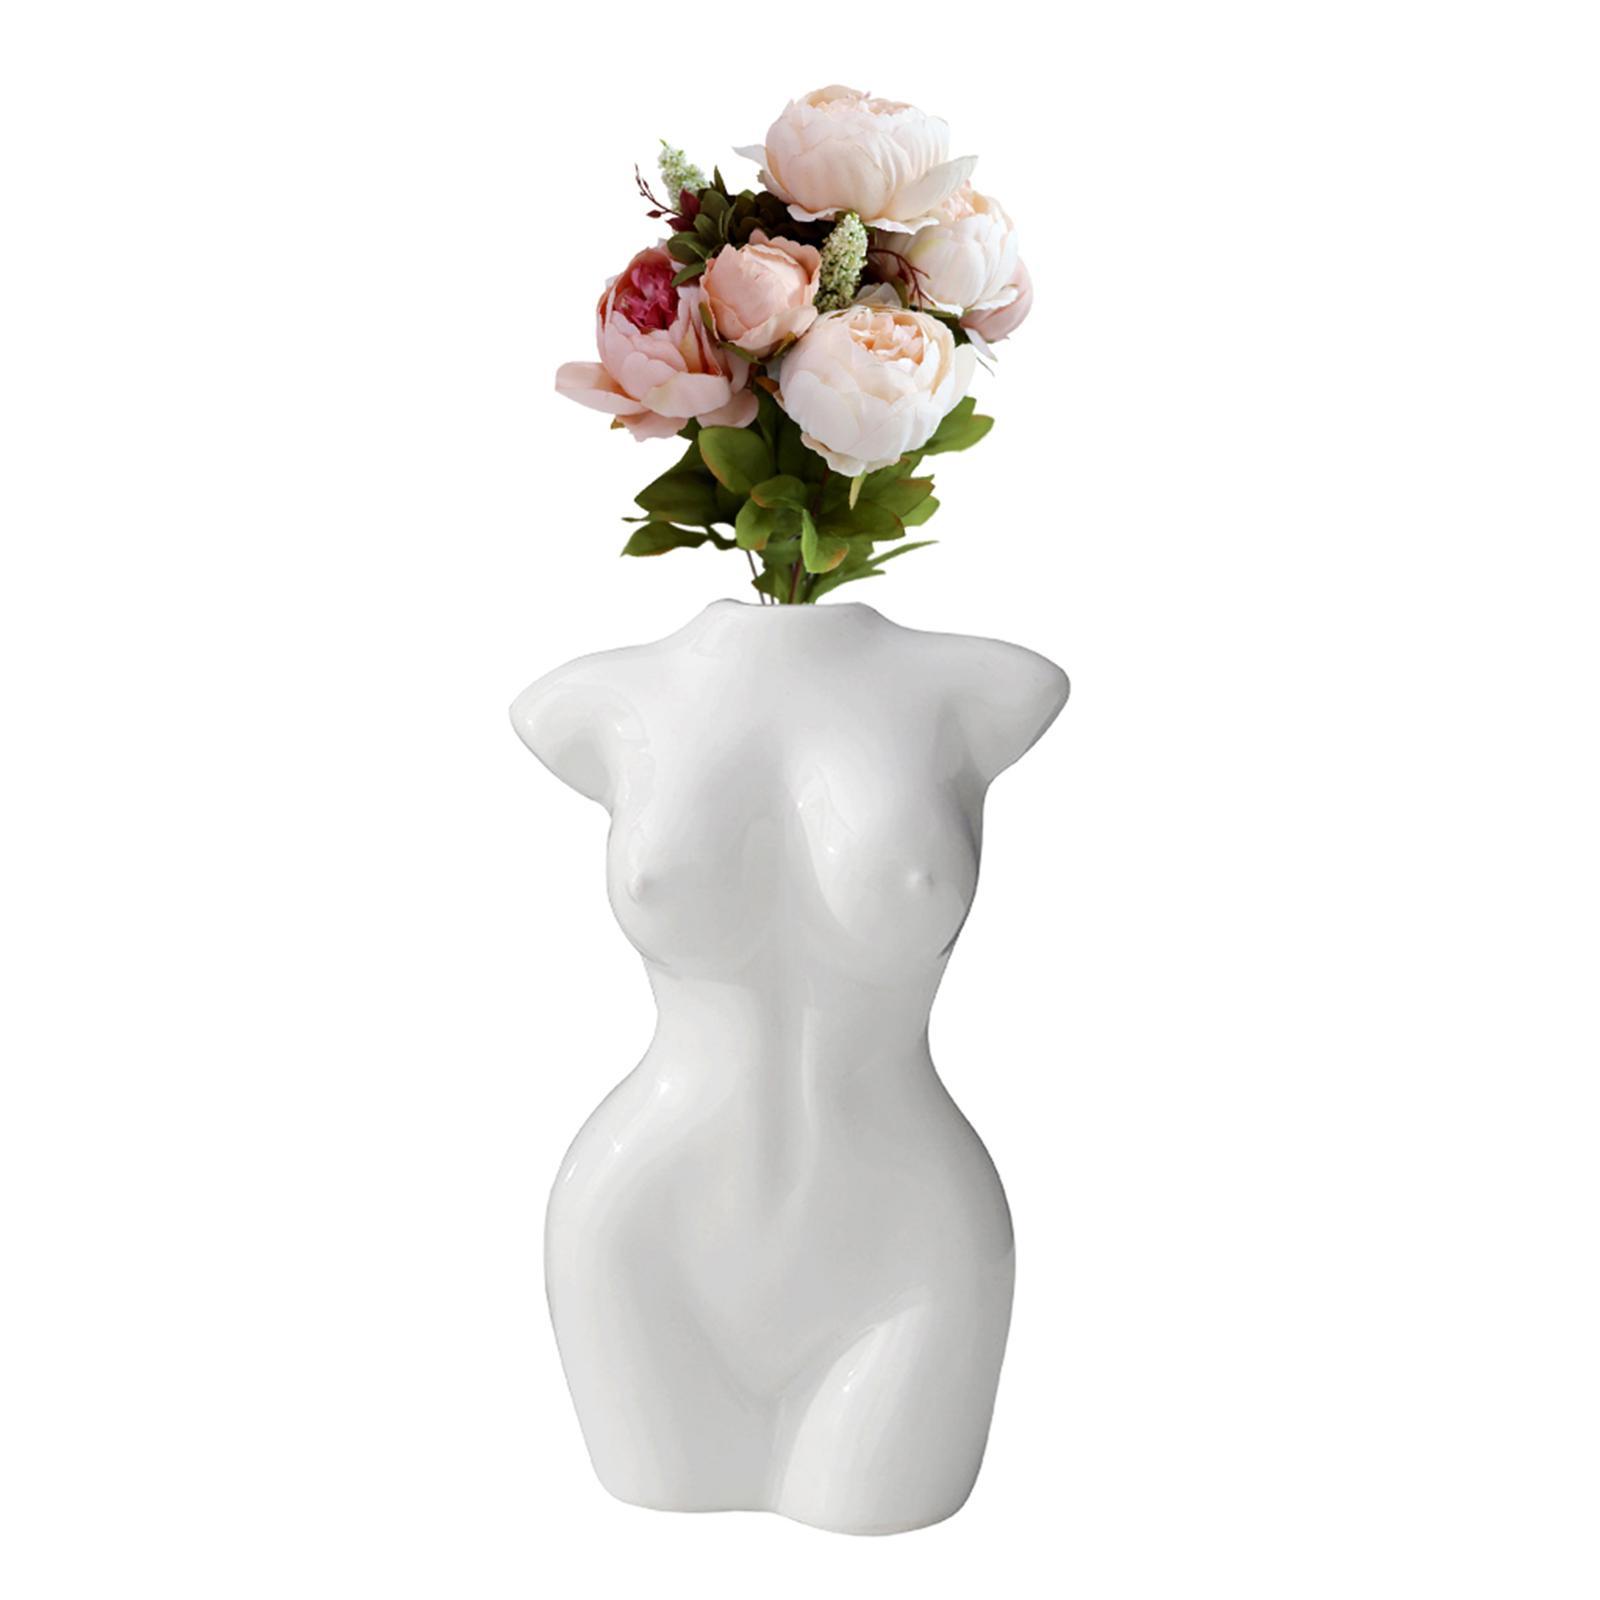 Female Body Flower Vase Female Body Sculpture Home Decor Gifts